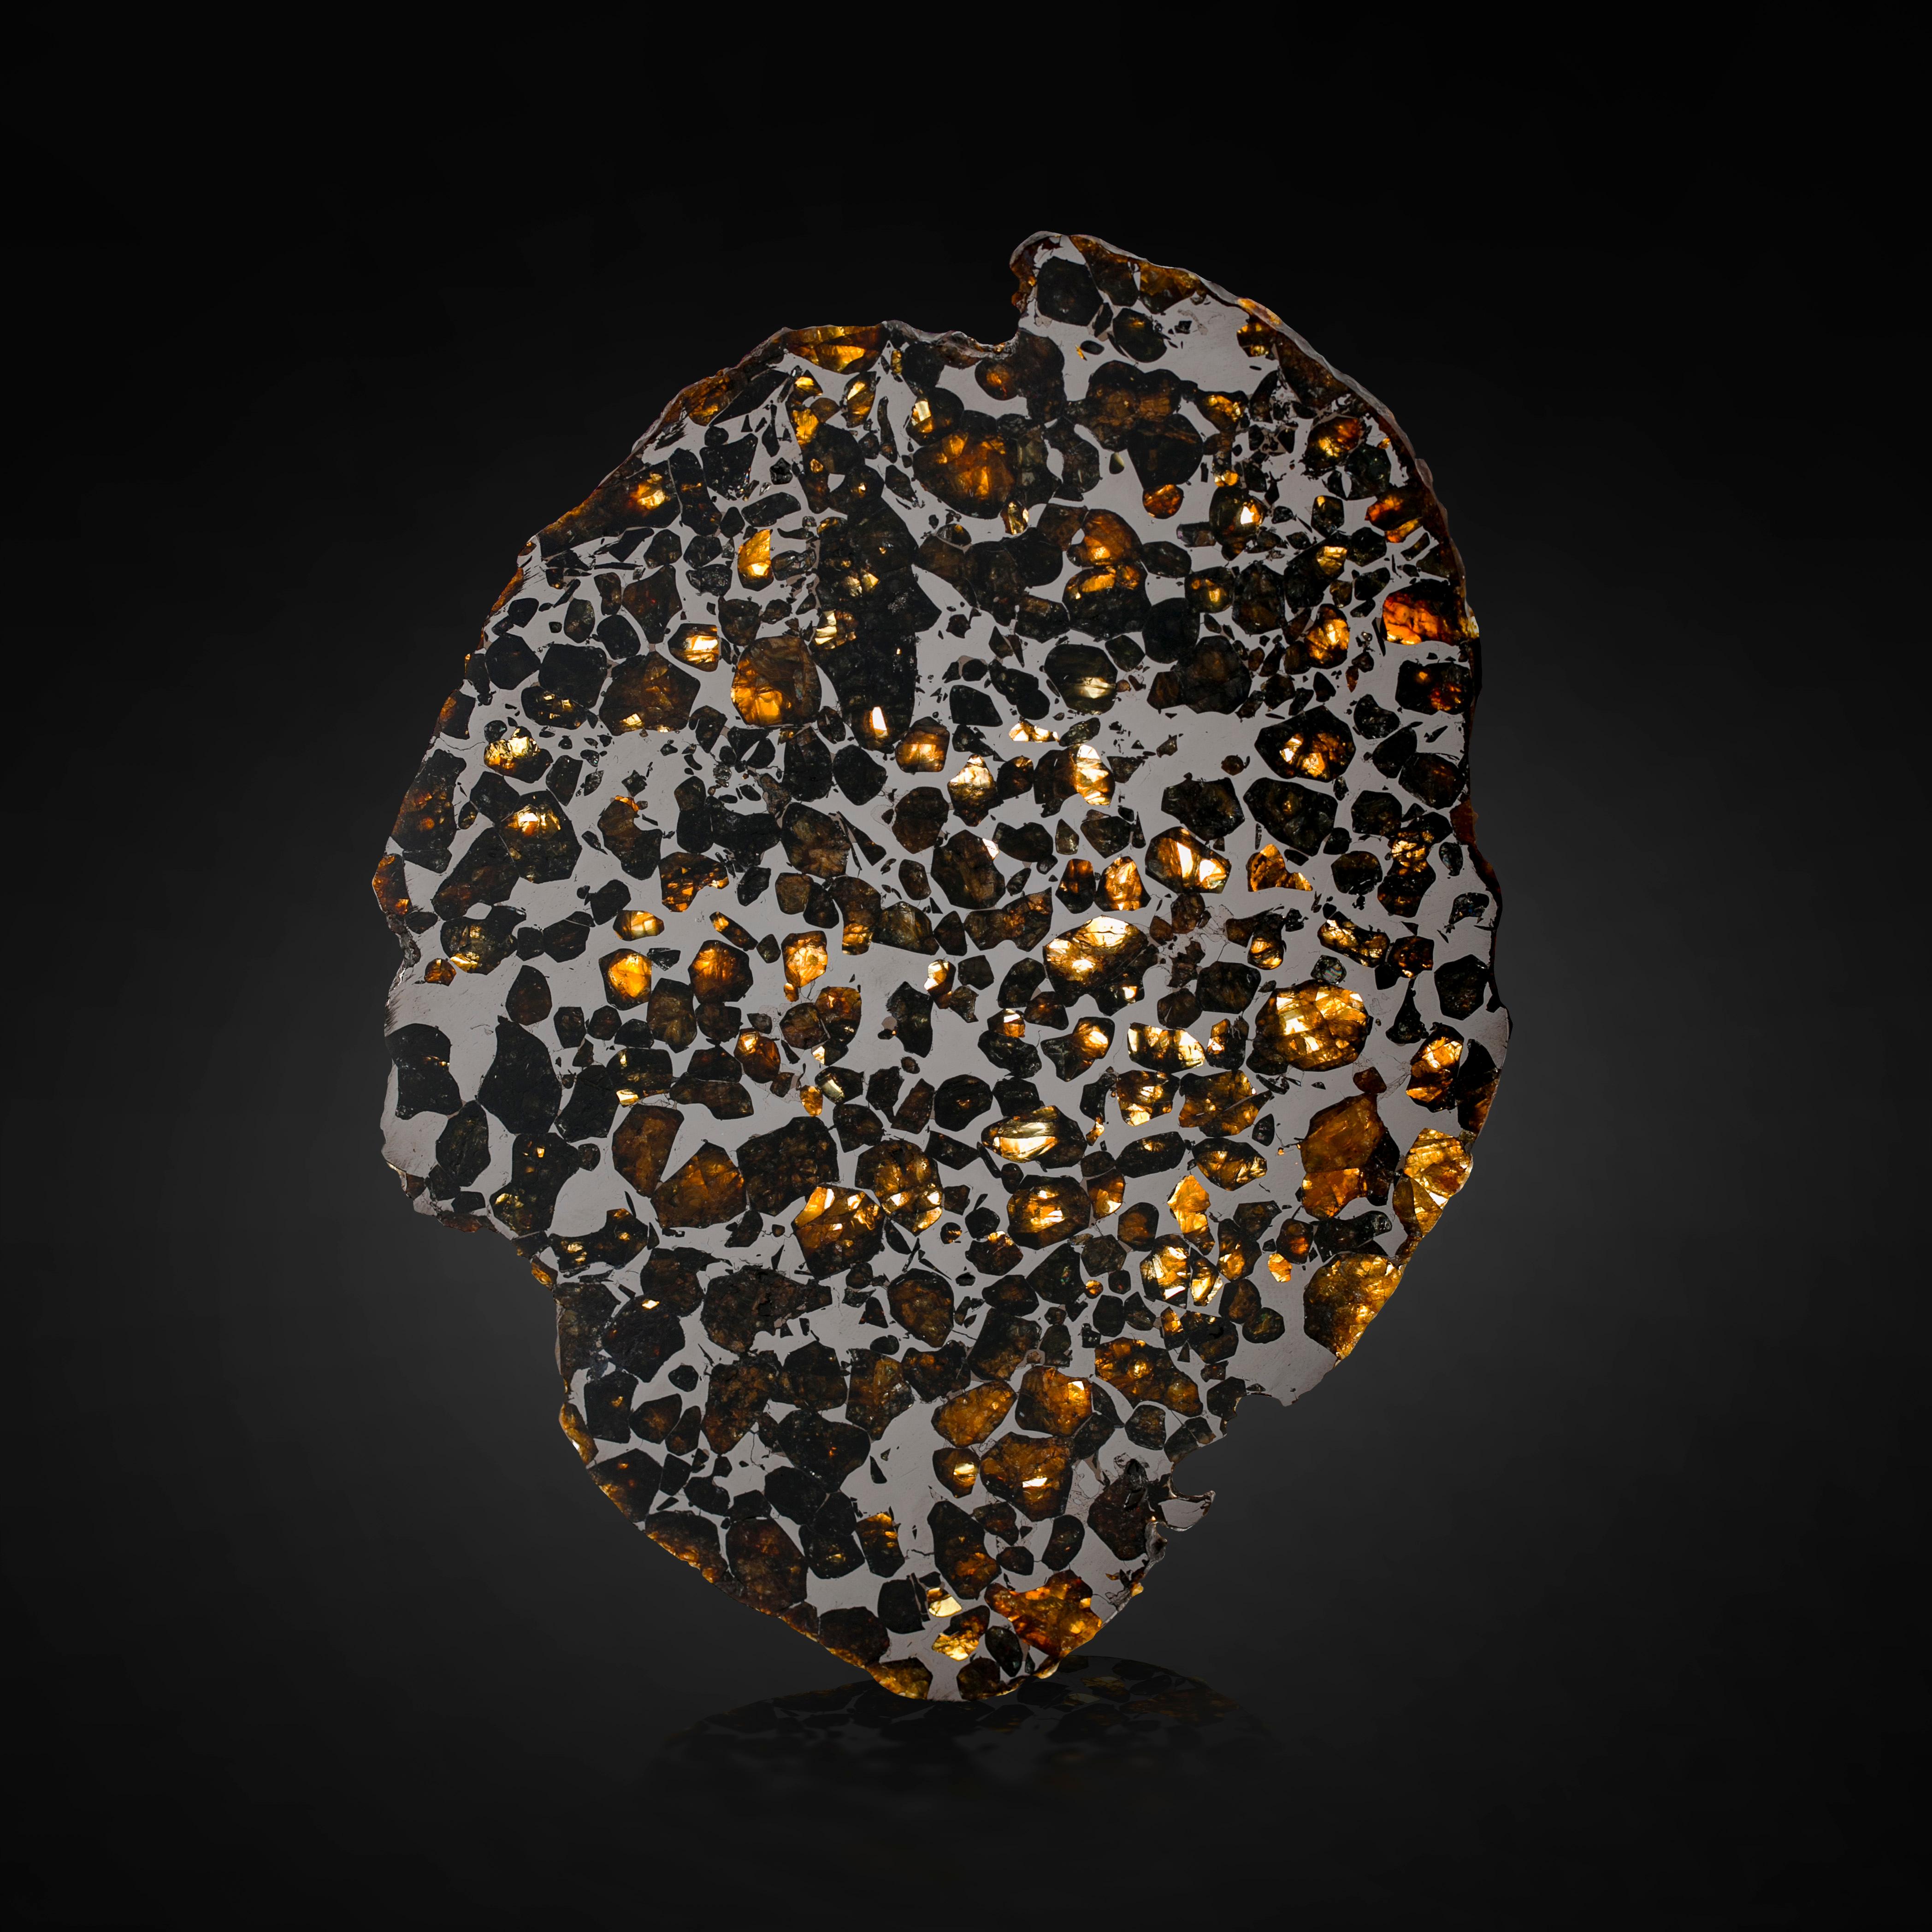 Les pallasites sont une sous-classe rare de météorites principalement composées d'une matrice de fer et de nickel (roche hôte) et de cristaux d'olivine. (Beaucoup connaissent l'olivine sous sa forme de pierre précieuse, le péridot.) On ne connaît à